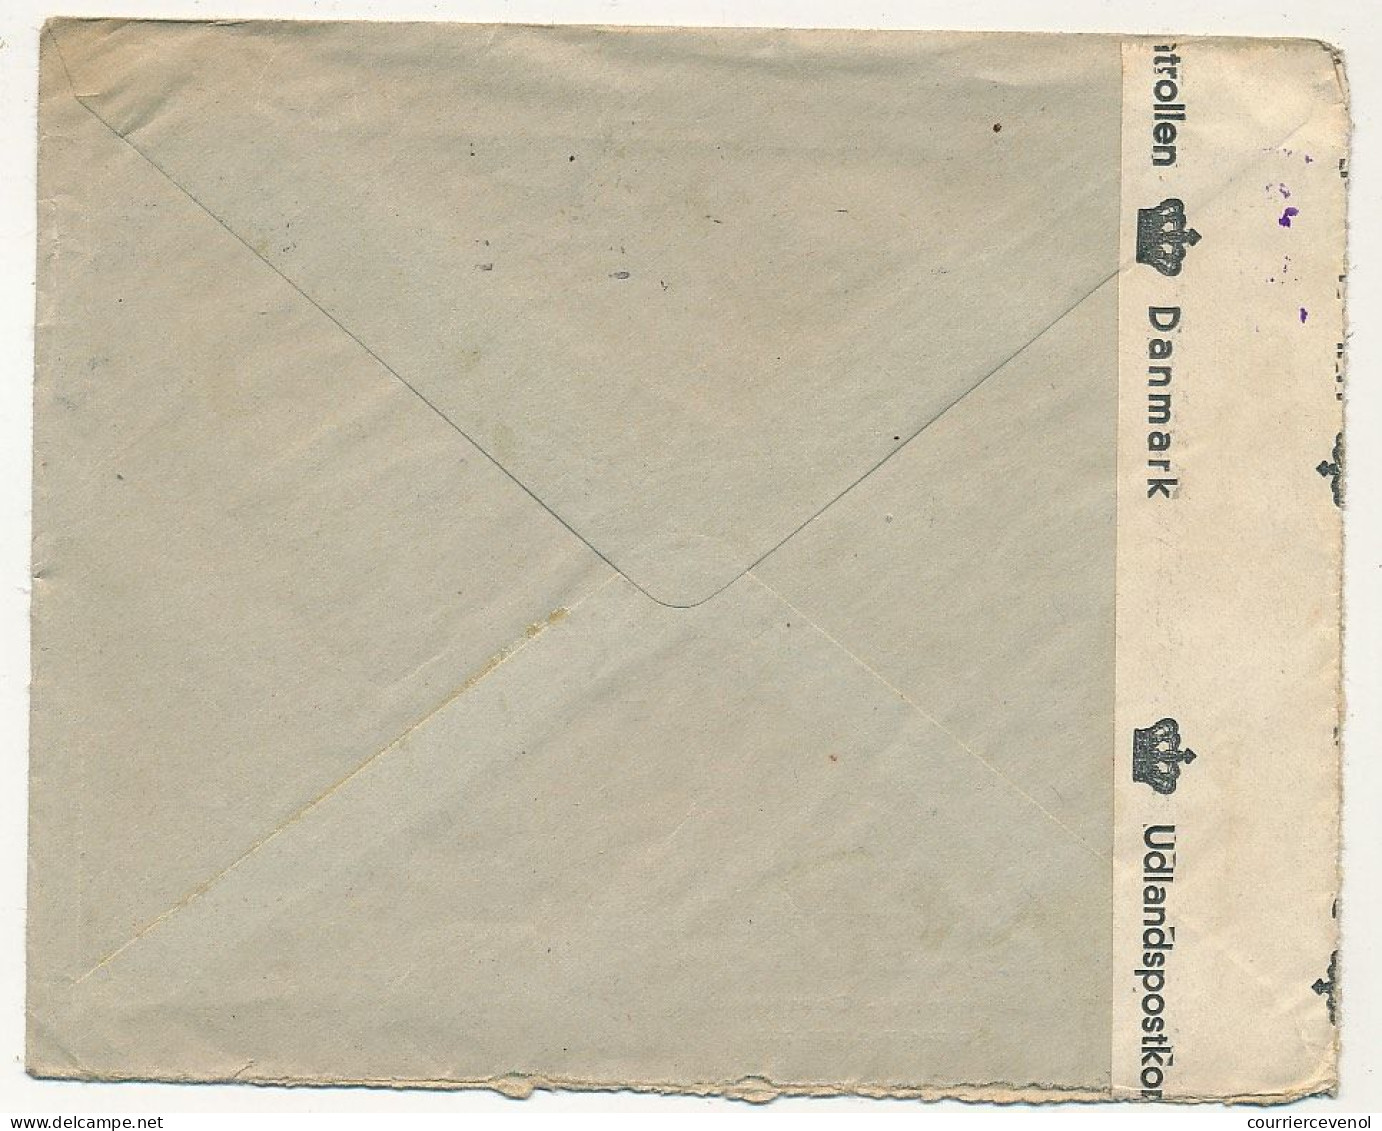 Enveloppe Depuis Copenhague 1941 Censure "455 Danmark" + A.Nr 1513 - Covers & Documents